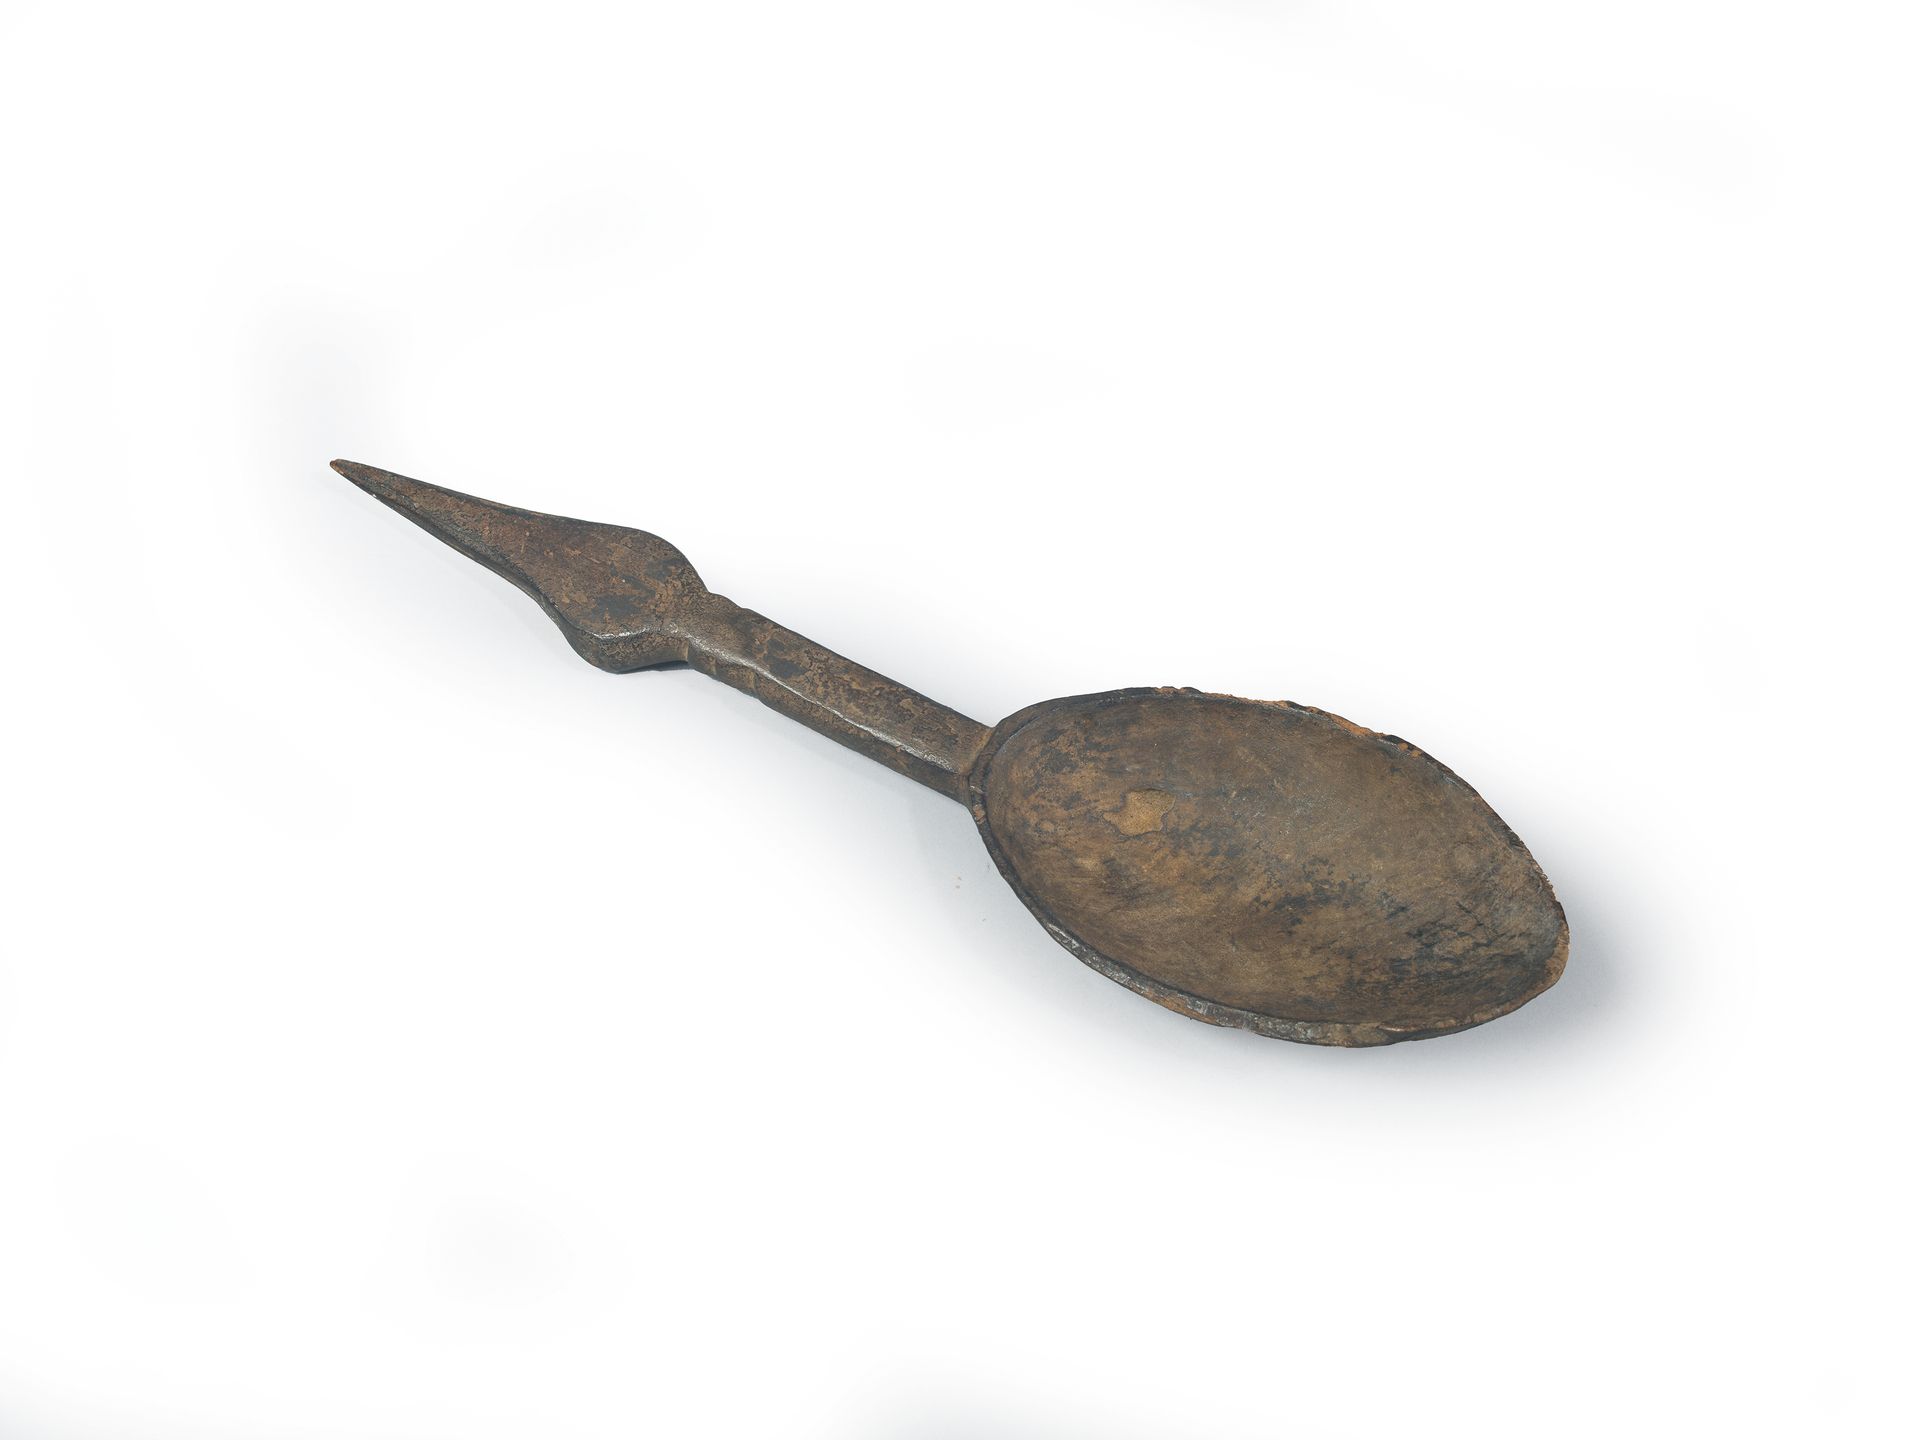 Null 勺子做成鸟的形状。

象牙海岸 19-20世纪

带铜锈的木材

34 x 8,5 cm